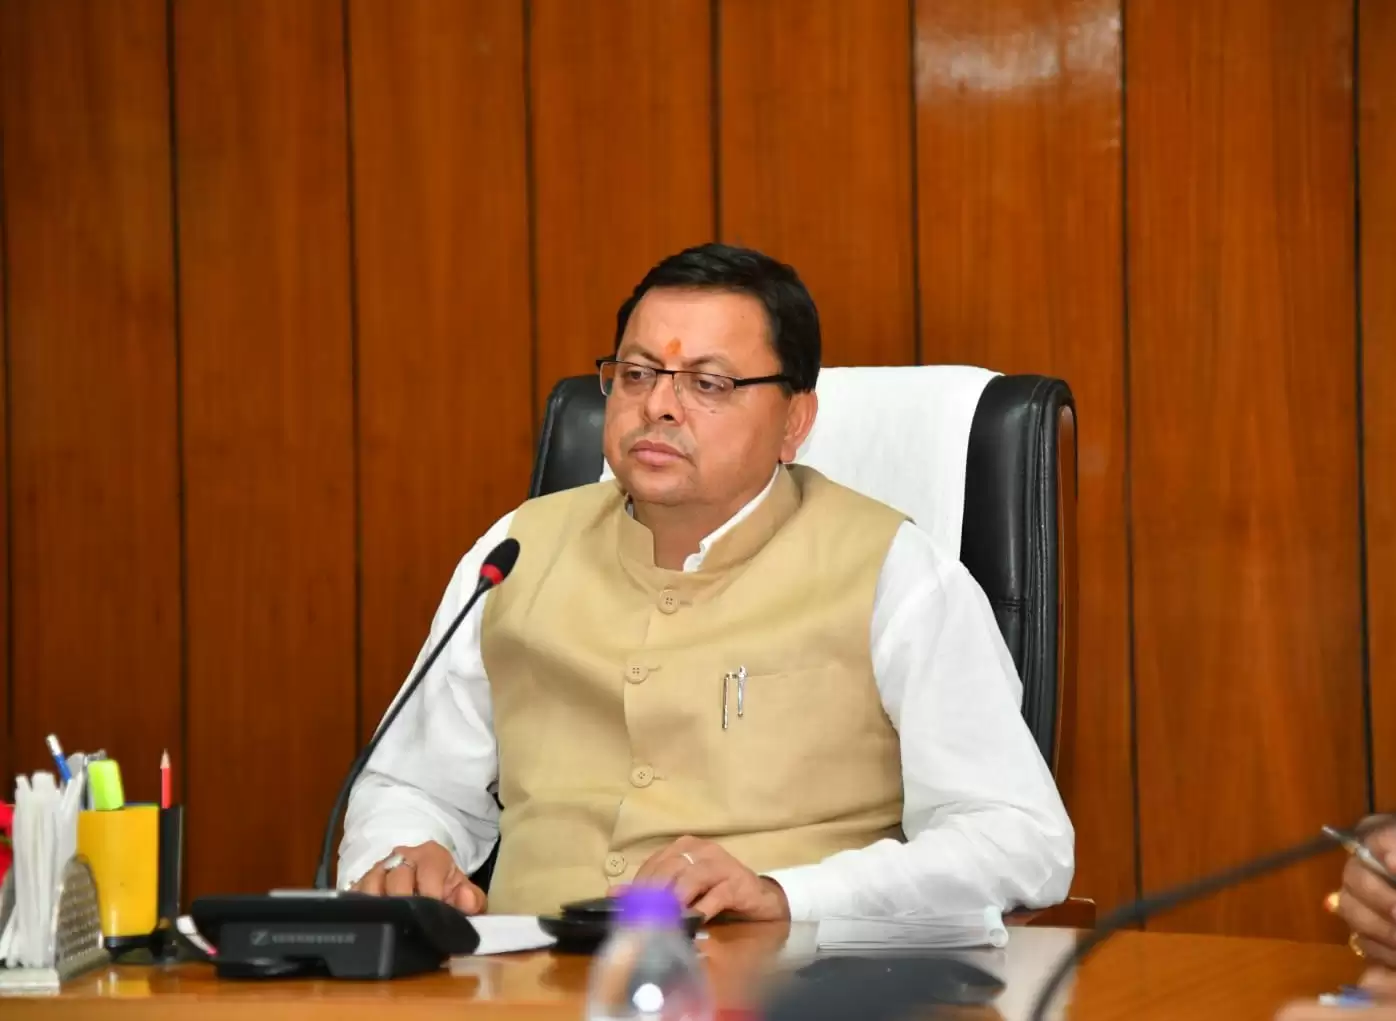 मुख्यमंत्री ने की सिंचाई एवं लघु सिंचाई विभाग की समीक्षा, सिंचाई एवं लघु सिंचाई विभाग के एकीकरण के दिये निर्देश